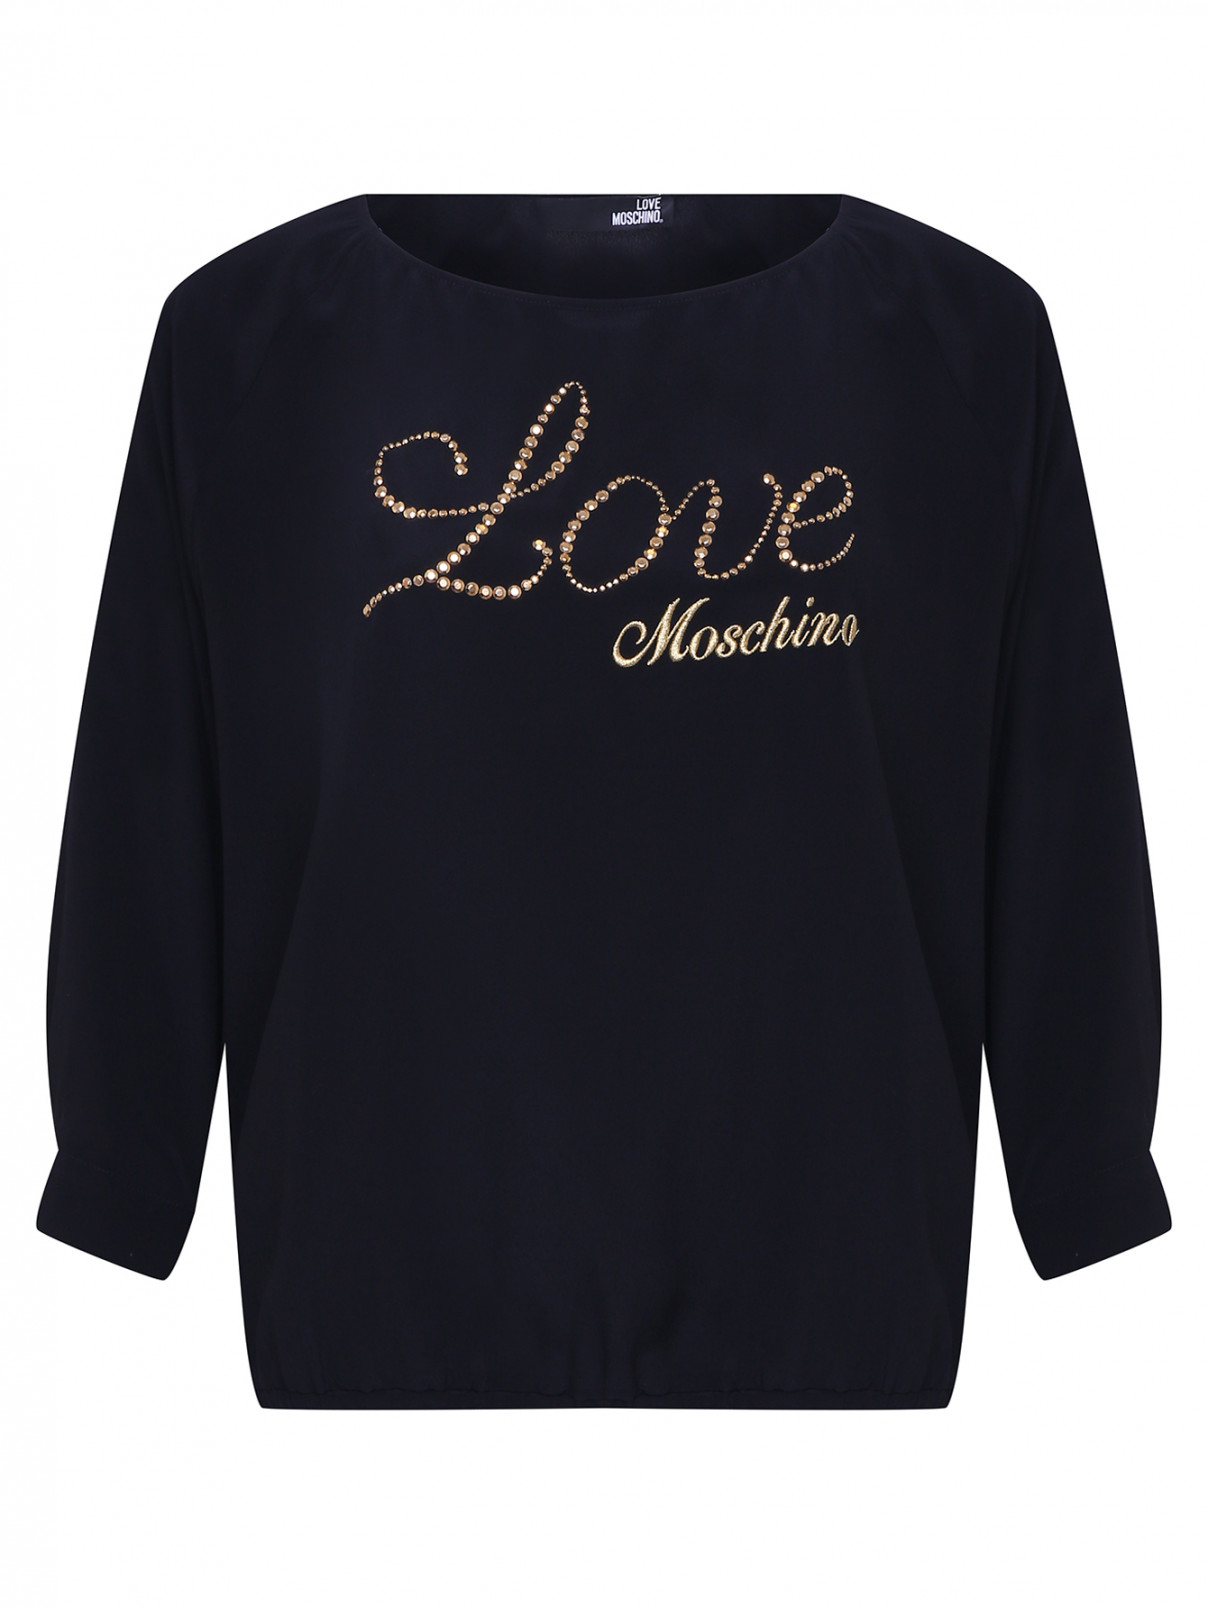 Блуза со стразами и вышивкой Love Moschino  –  Общий вид  – Цвет:  Черный